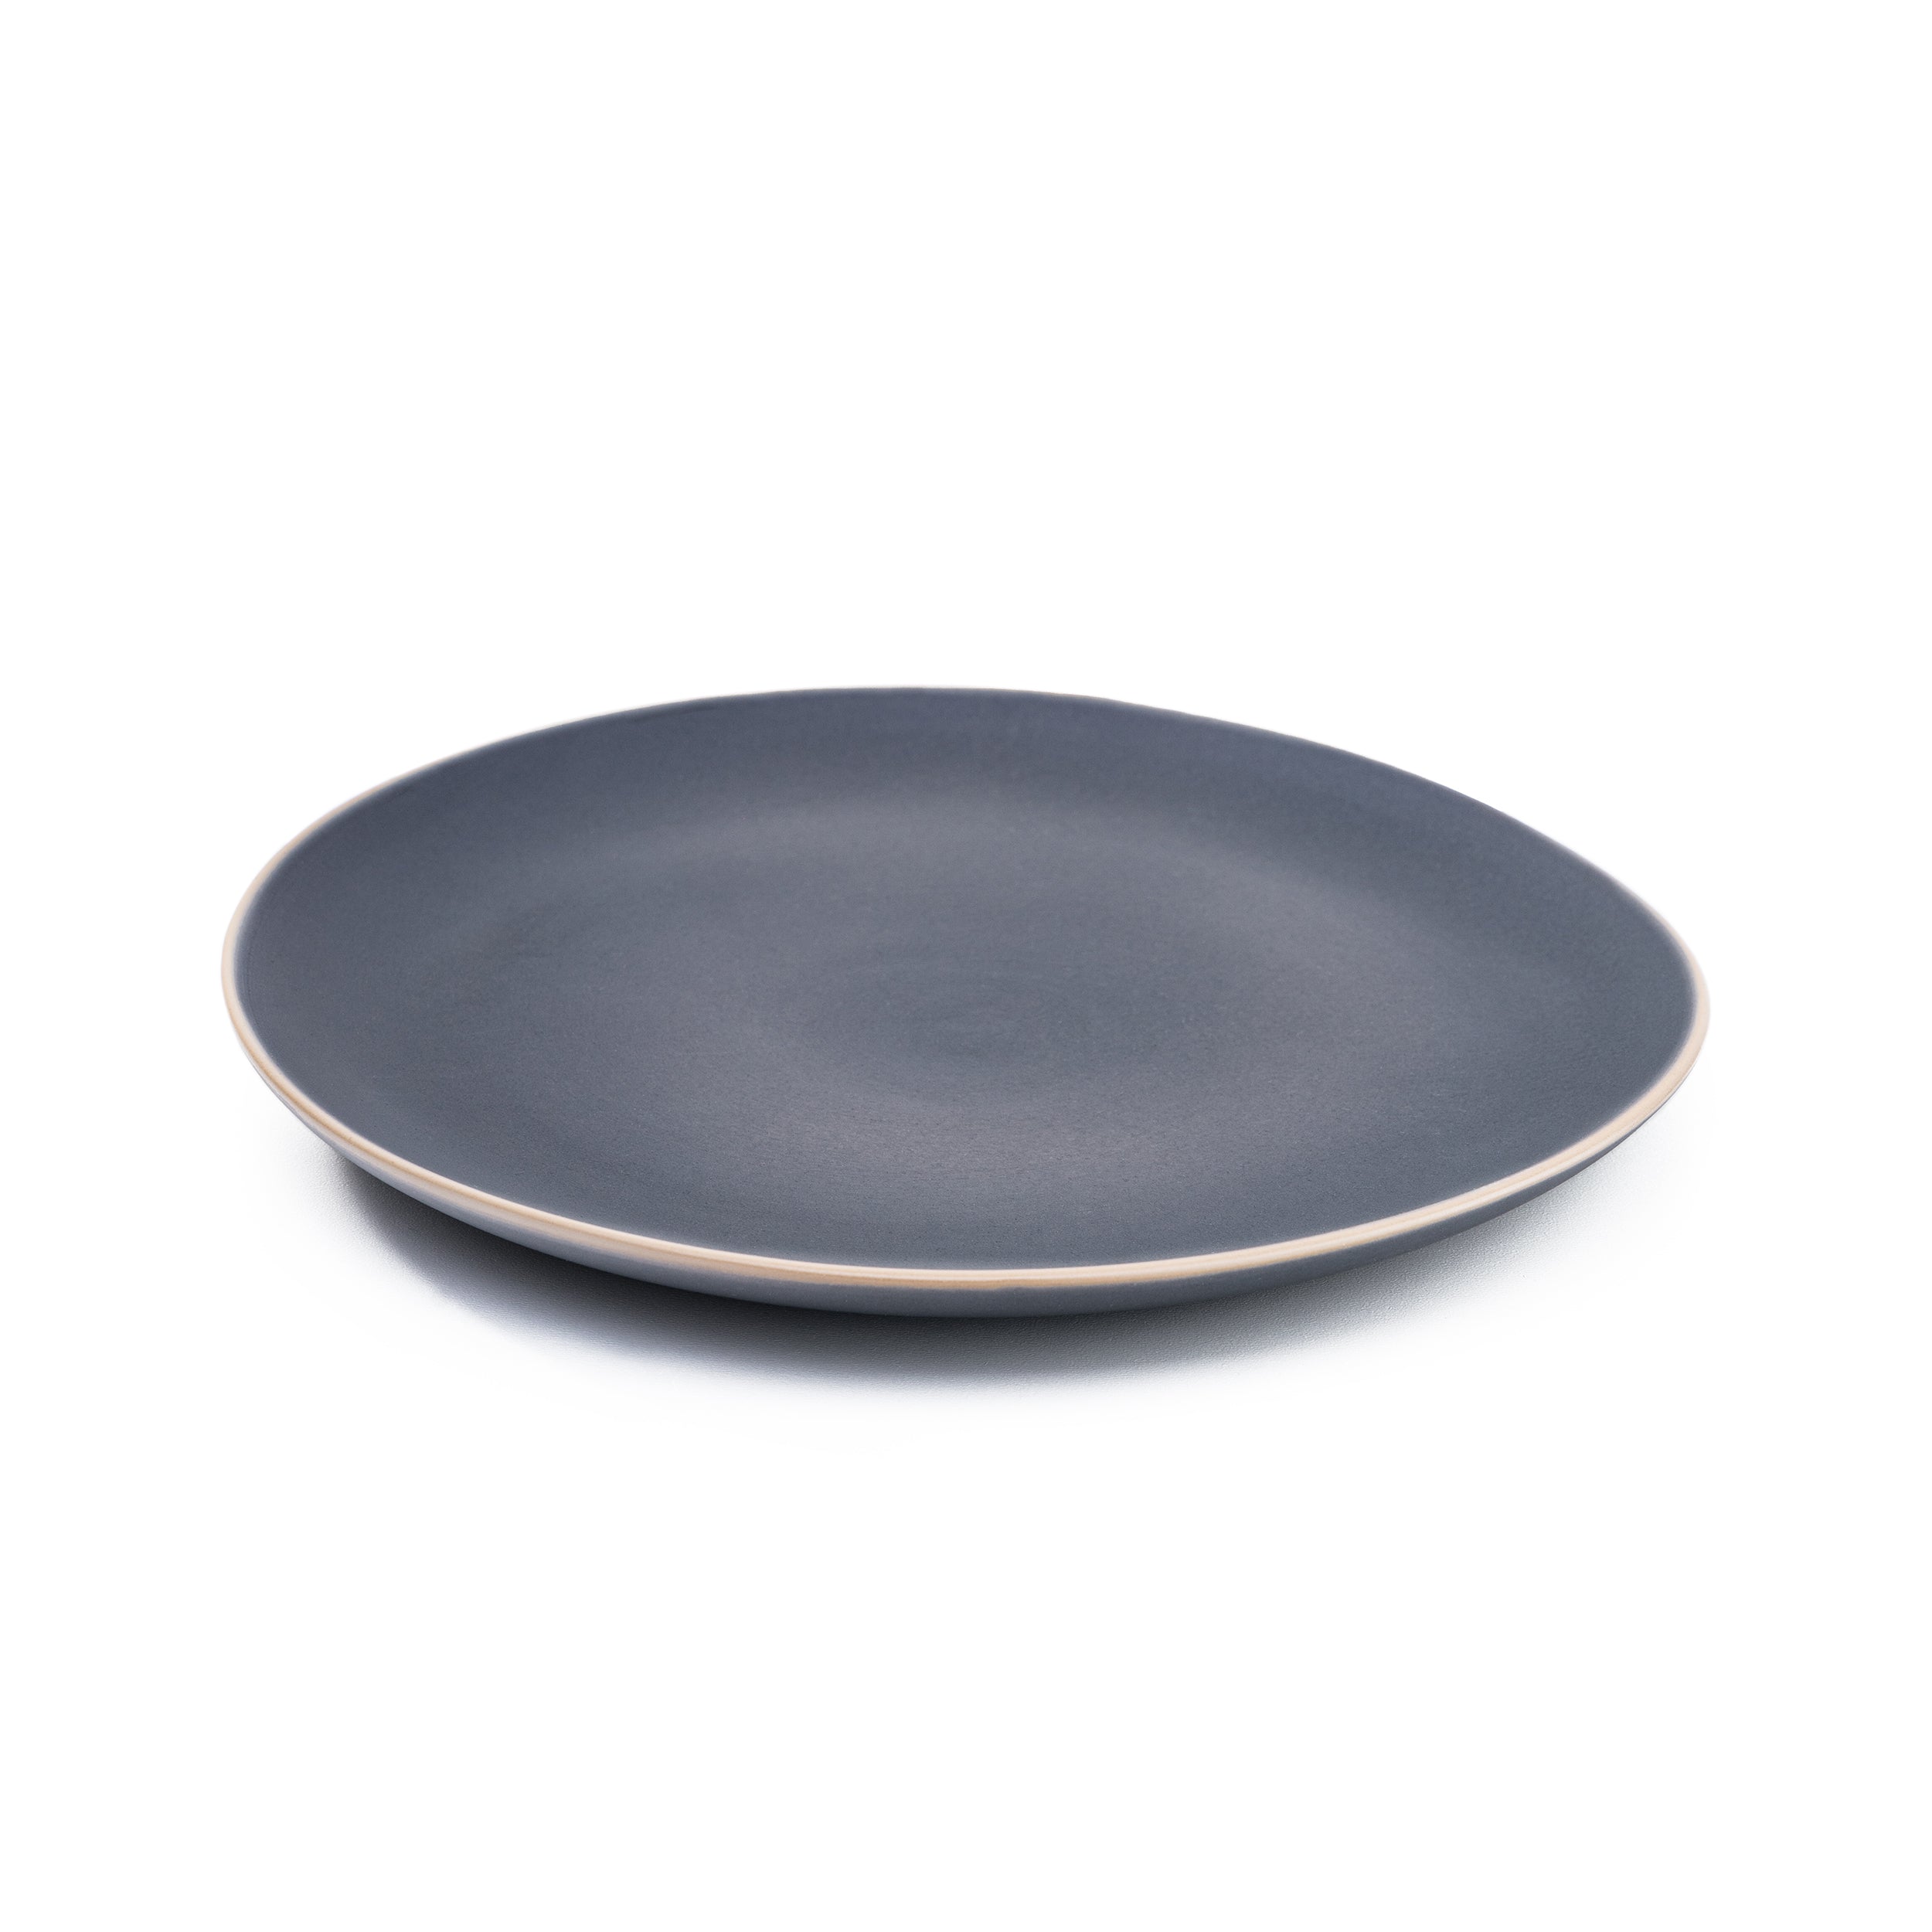 Herring & Bones - Concept Store Joyeux - La Manufacture de Digoin - Assiettes - Assiette plate en grès